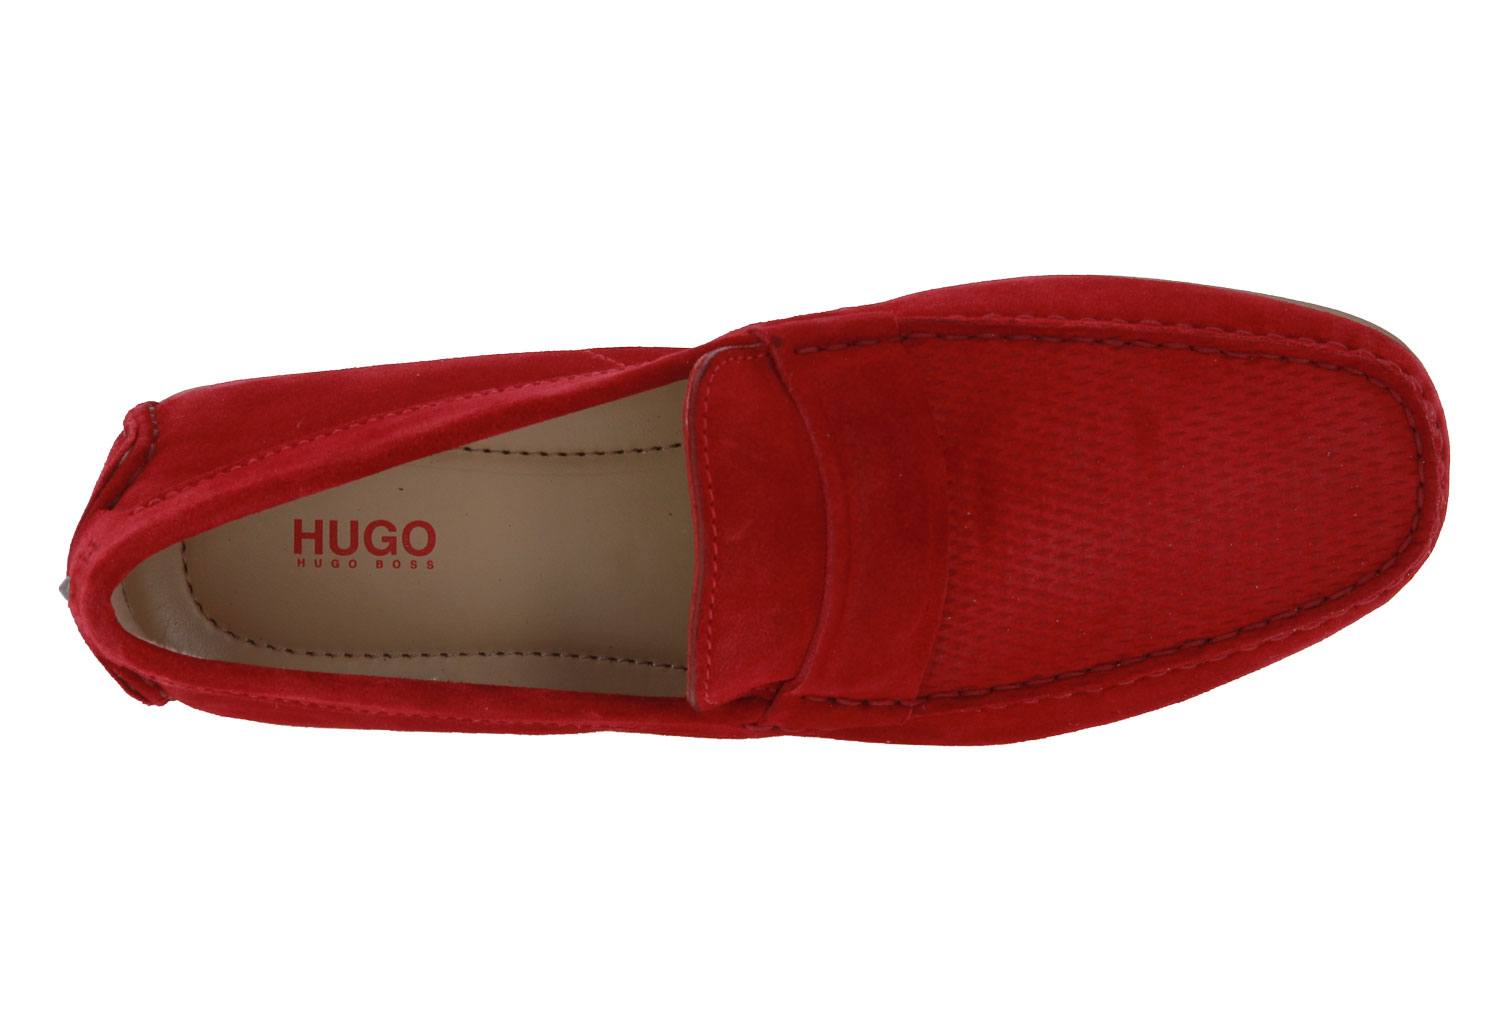 Hugo Boss Mokassin DANDY BRIGHT RED (46)